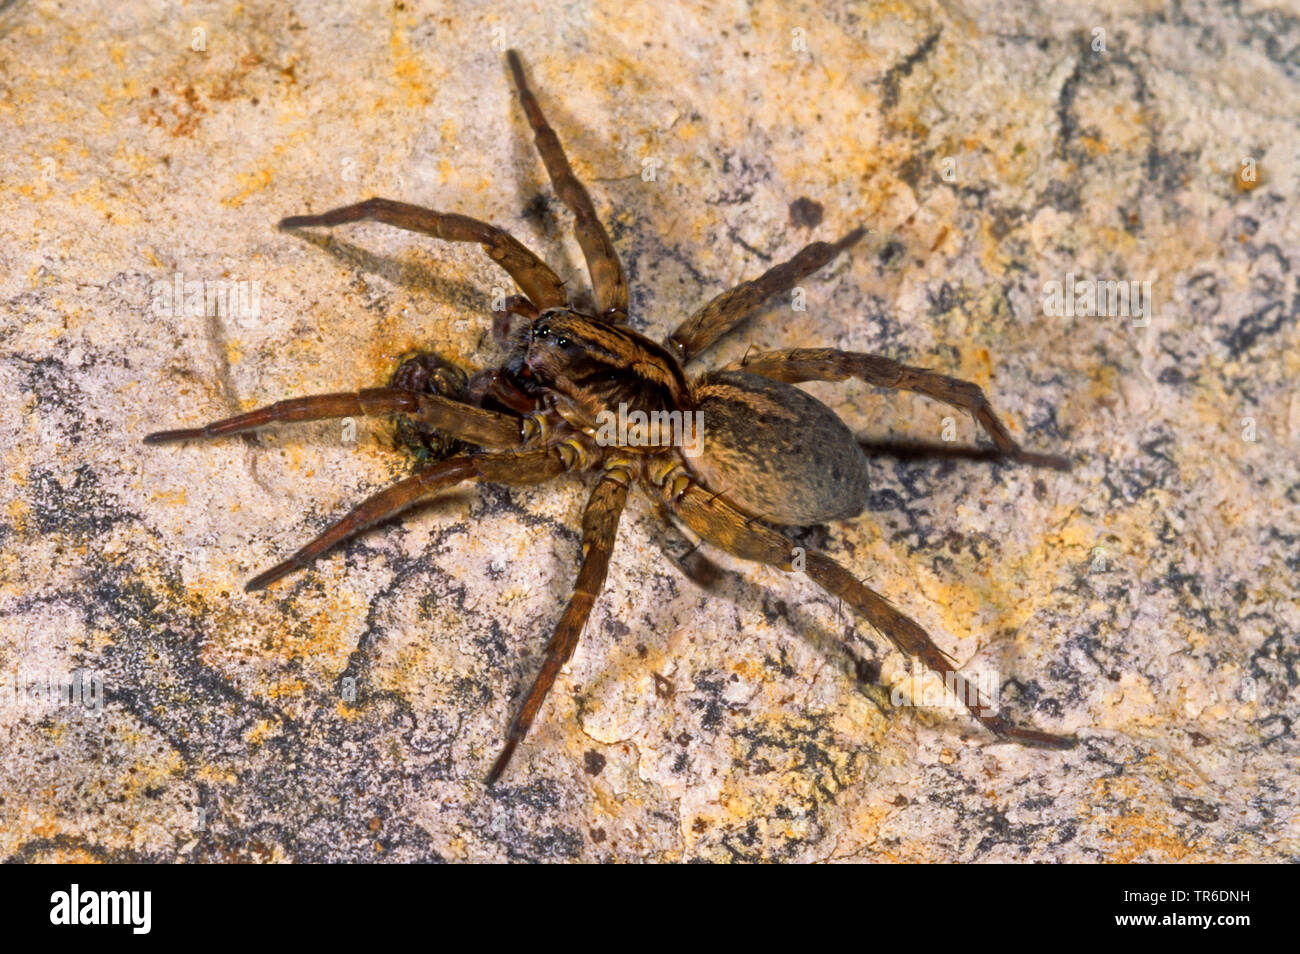 (Araignée-loup Trochosa ruricola), sur un rocher, Allemagne Banque D'Images